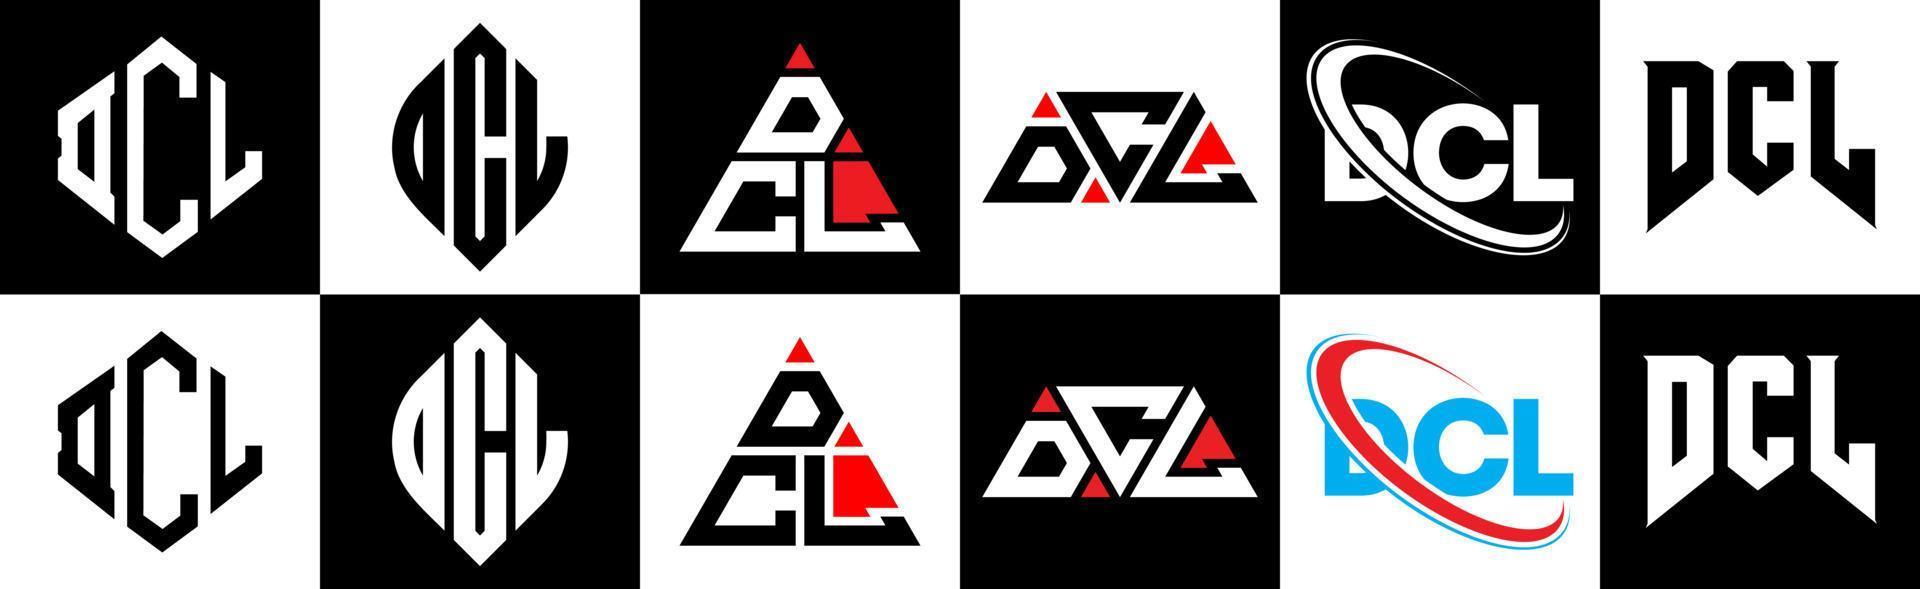 dcl-Buchstaben-Logo-Design in sechs Stilen. dcl-Polygon, Kreis, Dreieck, Sechseck, flacher und einfacher Stil mit schwarz-weißem Buchstabenlogo in einer Zeichenfläche. dcl minimalistisches und klassisches Logo vektor